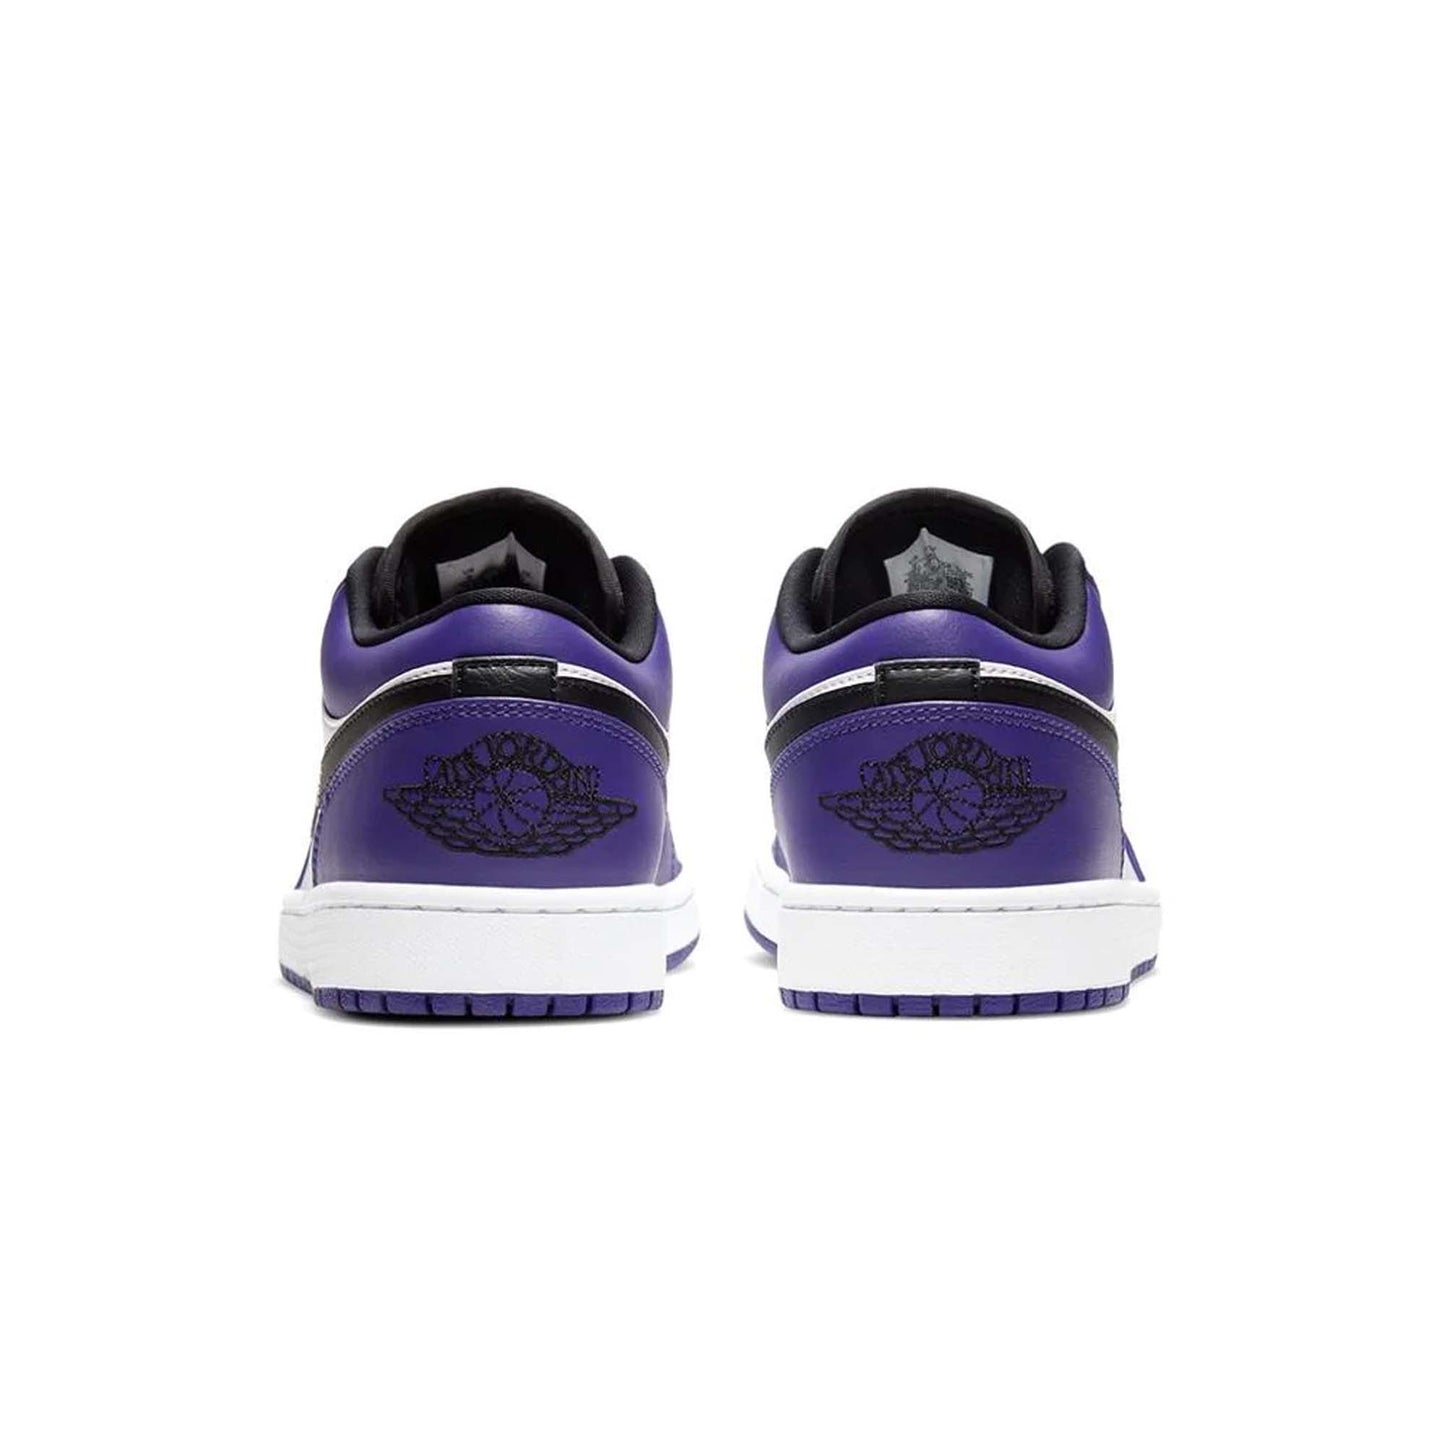 Nike Air Jordan Low "Court Purple" UK7